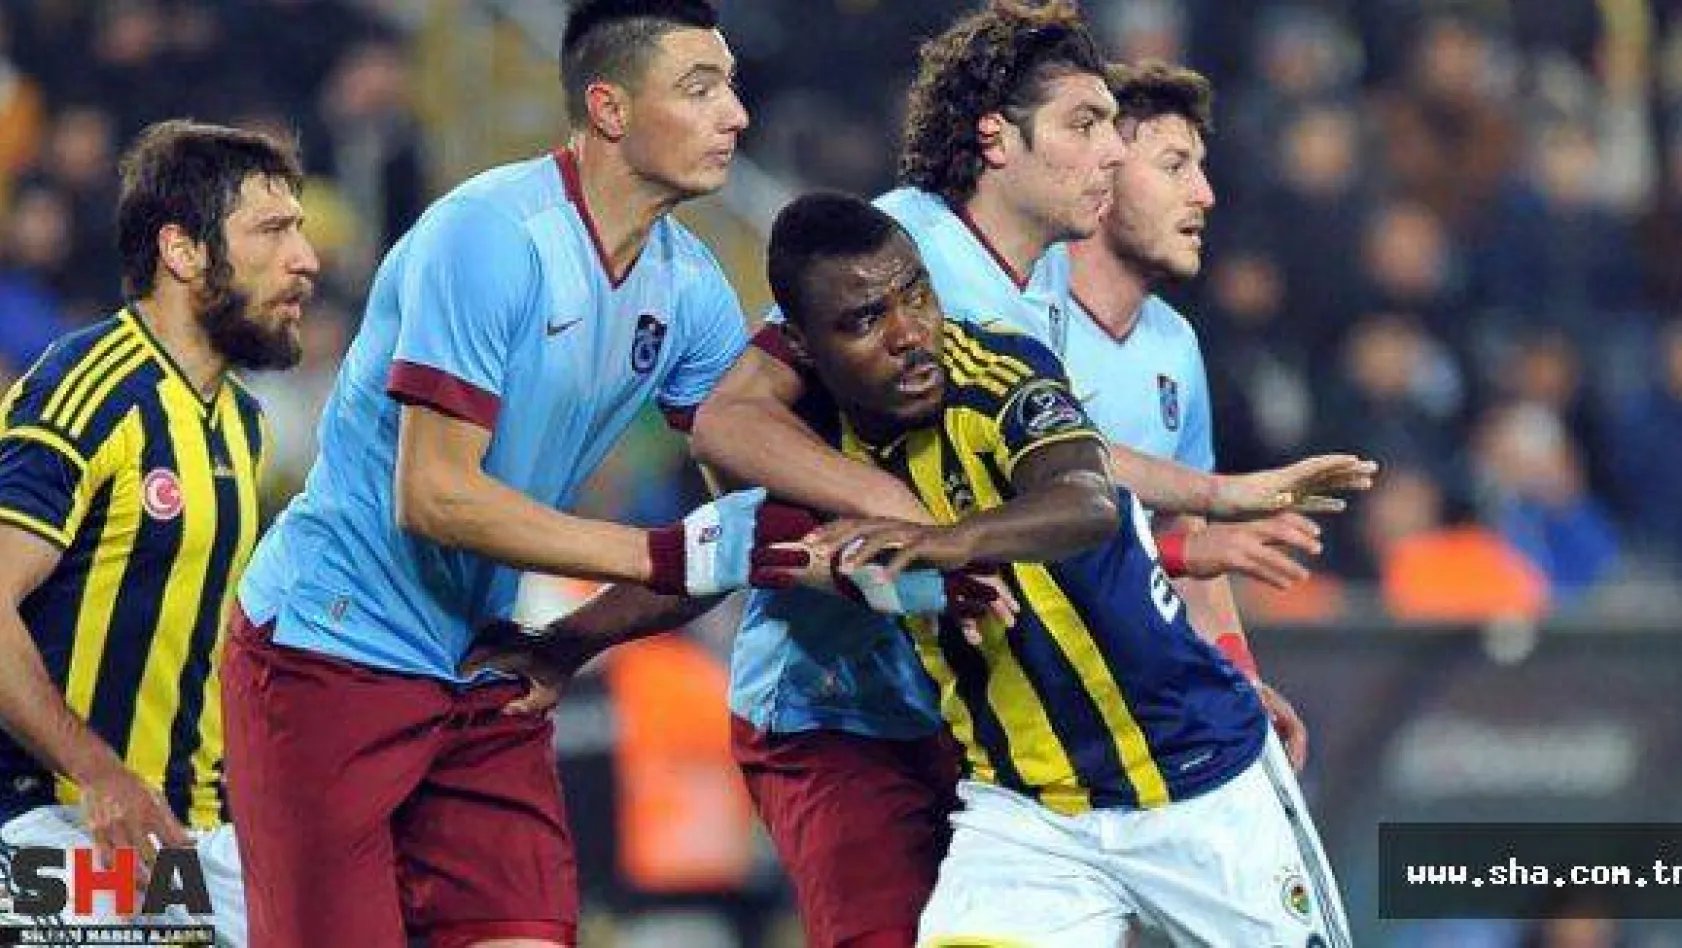 Fenerbahçe zirve yolunda yara aldı